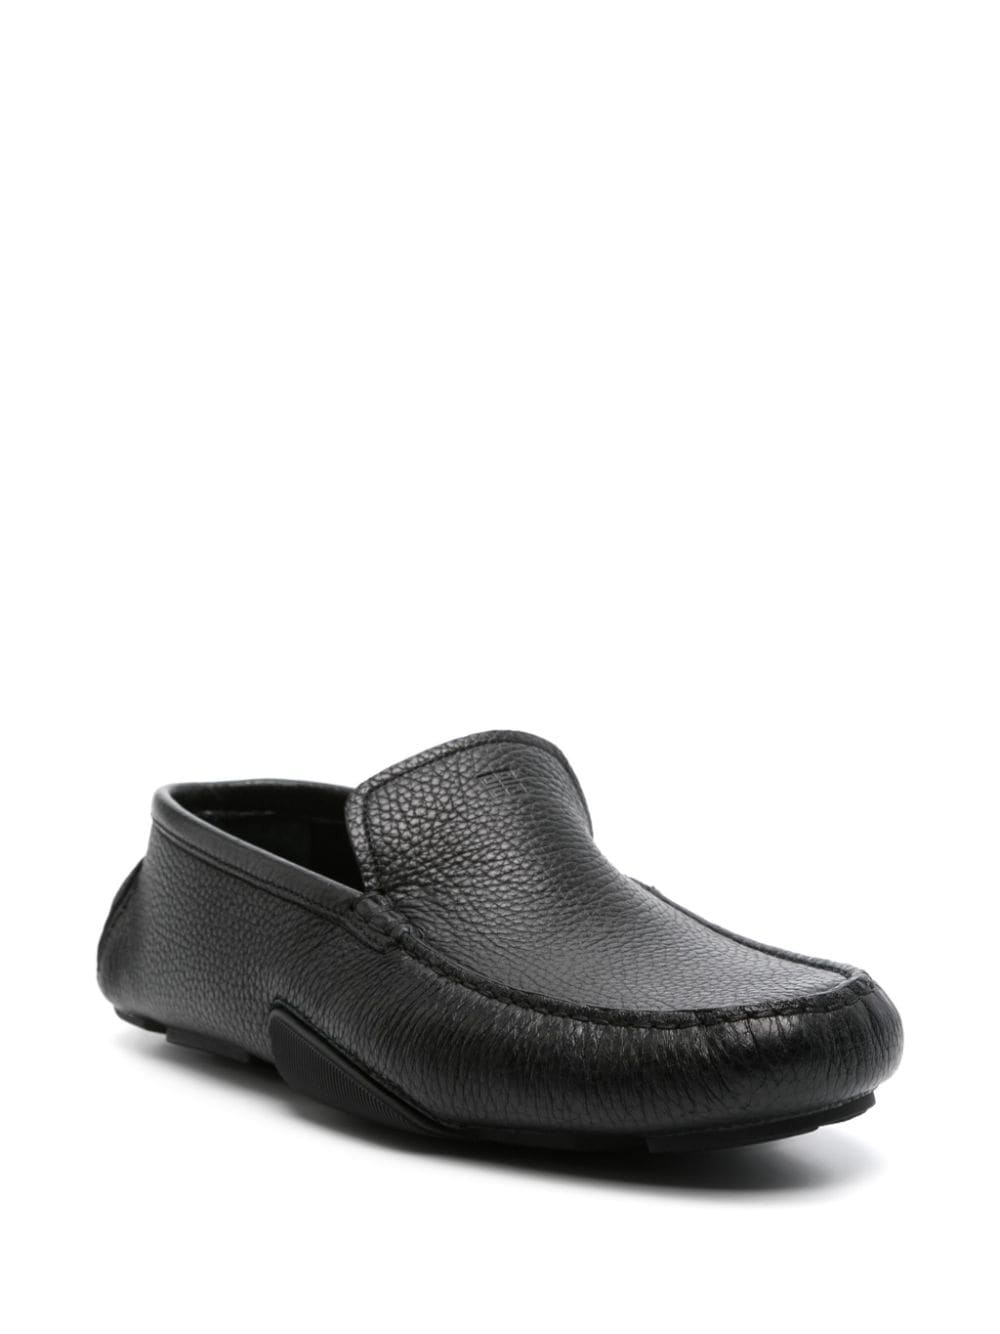 Givenchy Mr G Driver leren loafers - Zwart